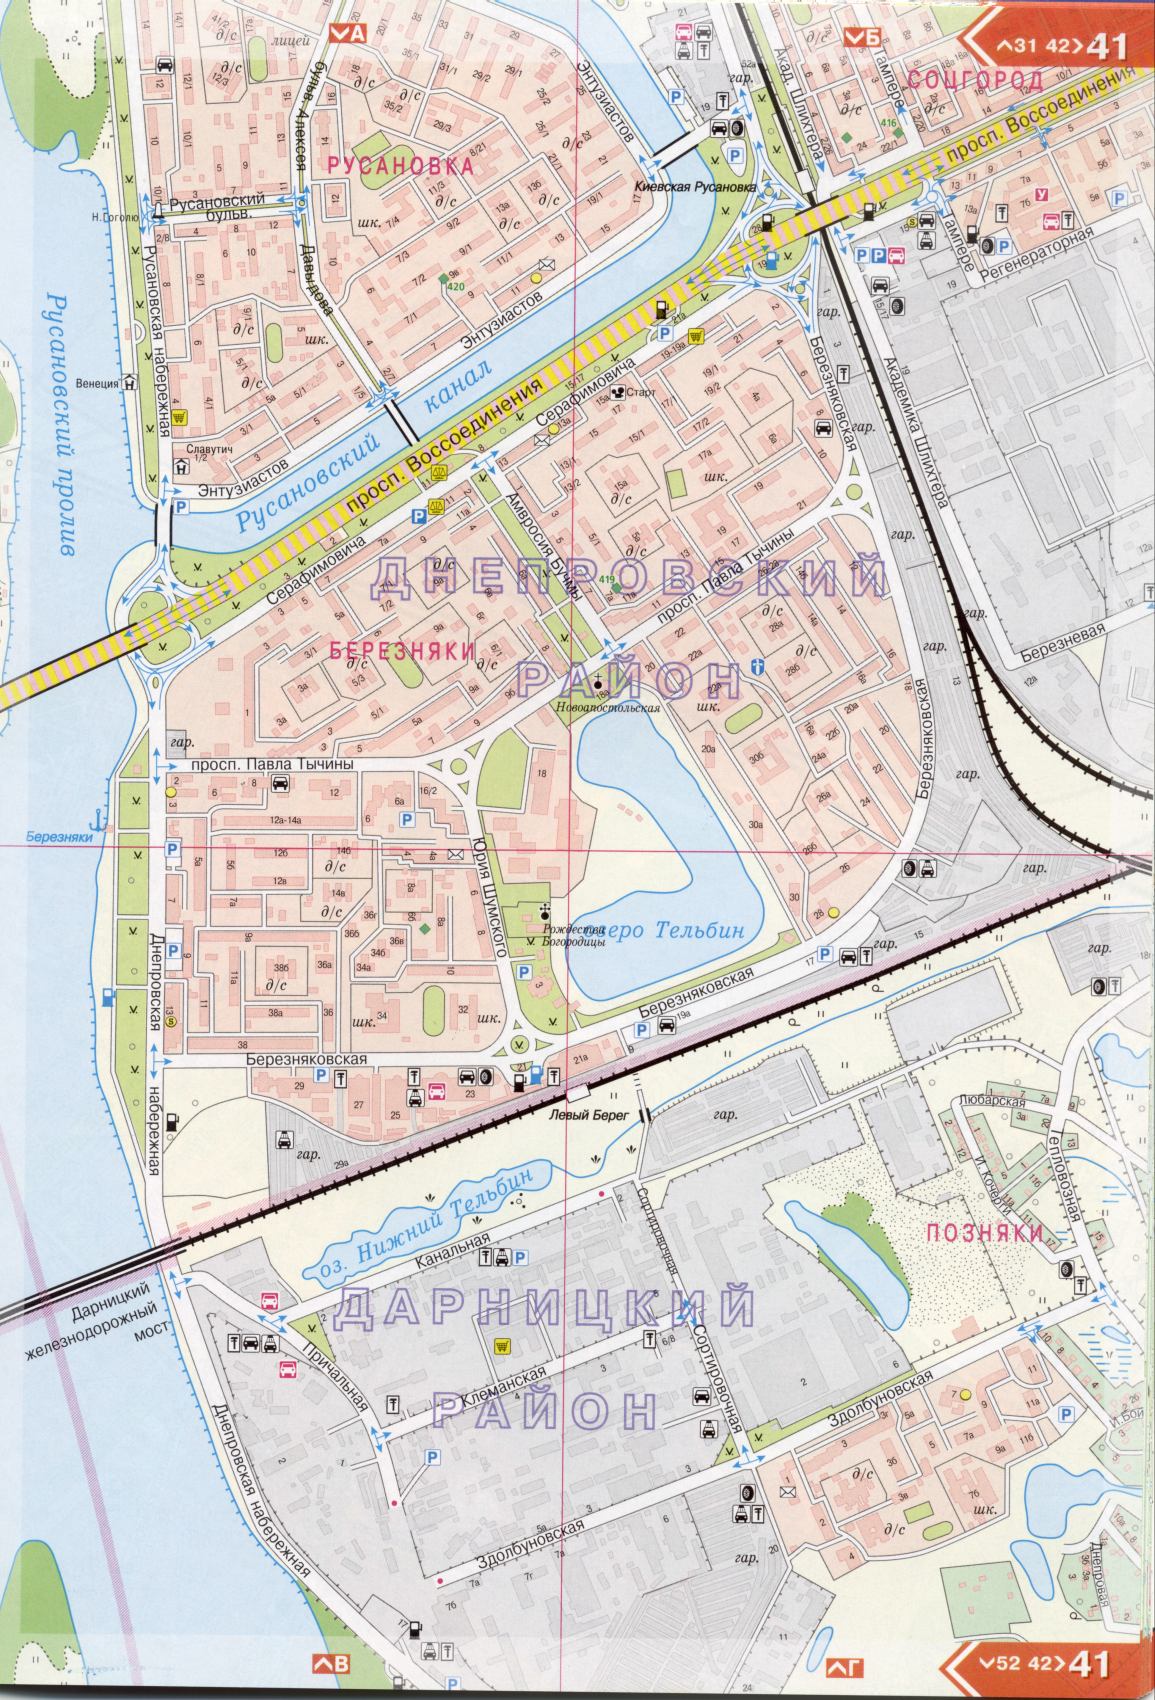 Kiew Karte Details 1cm = 150m für 45 Blatt. Karte von Kiew aus dem Atlas von Autobahnen. Laden Sie eine detaillierte Karte, H3